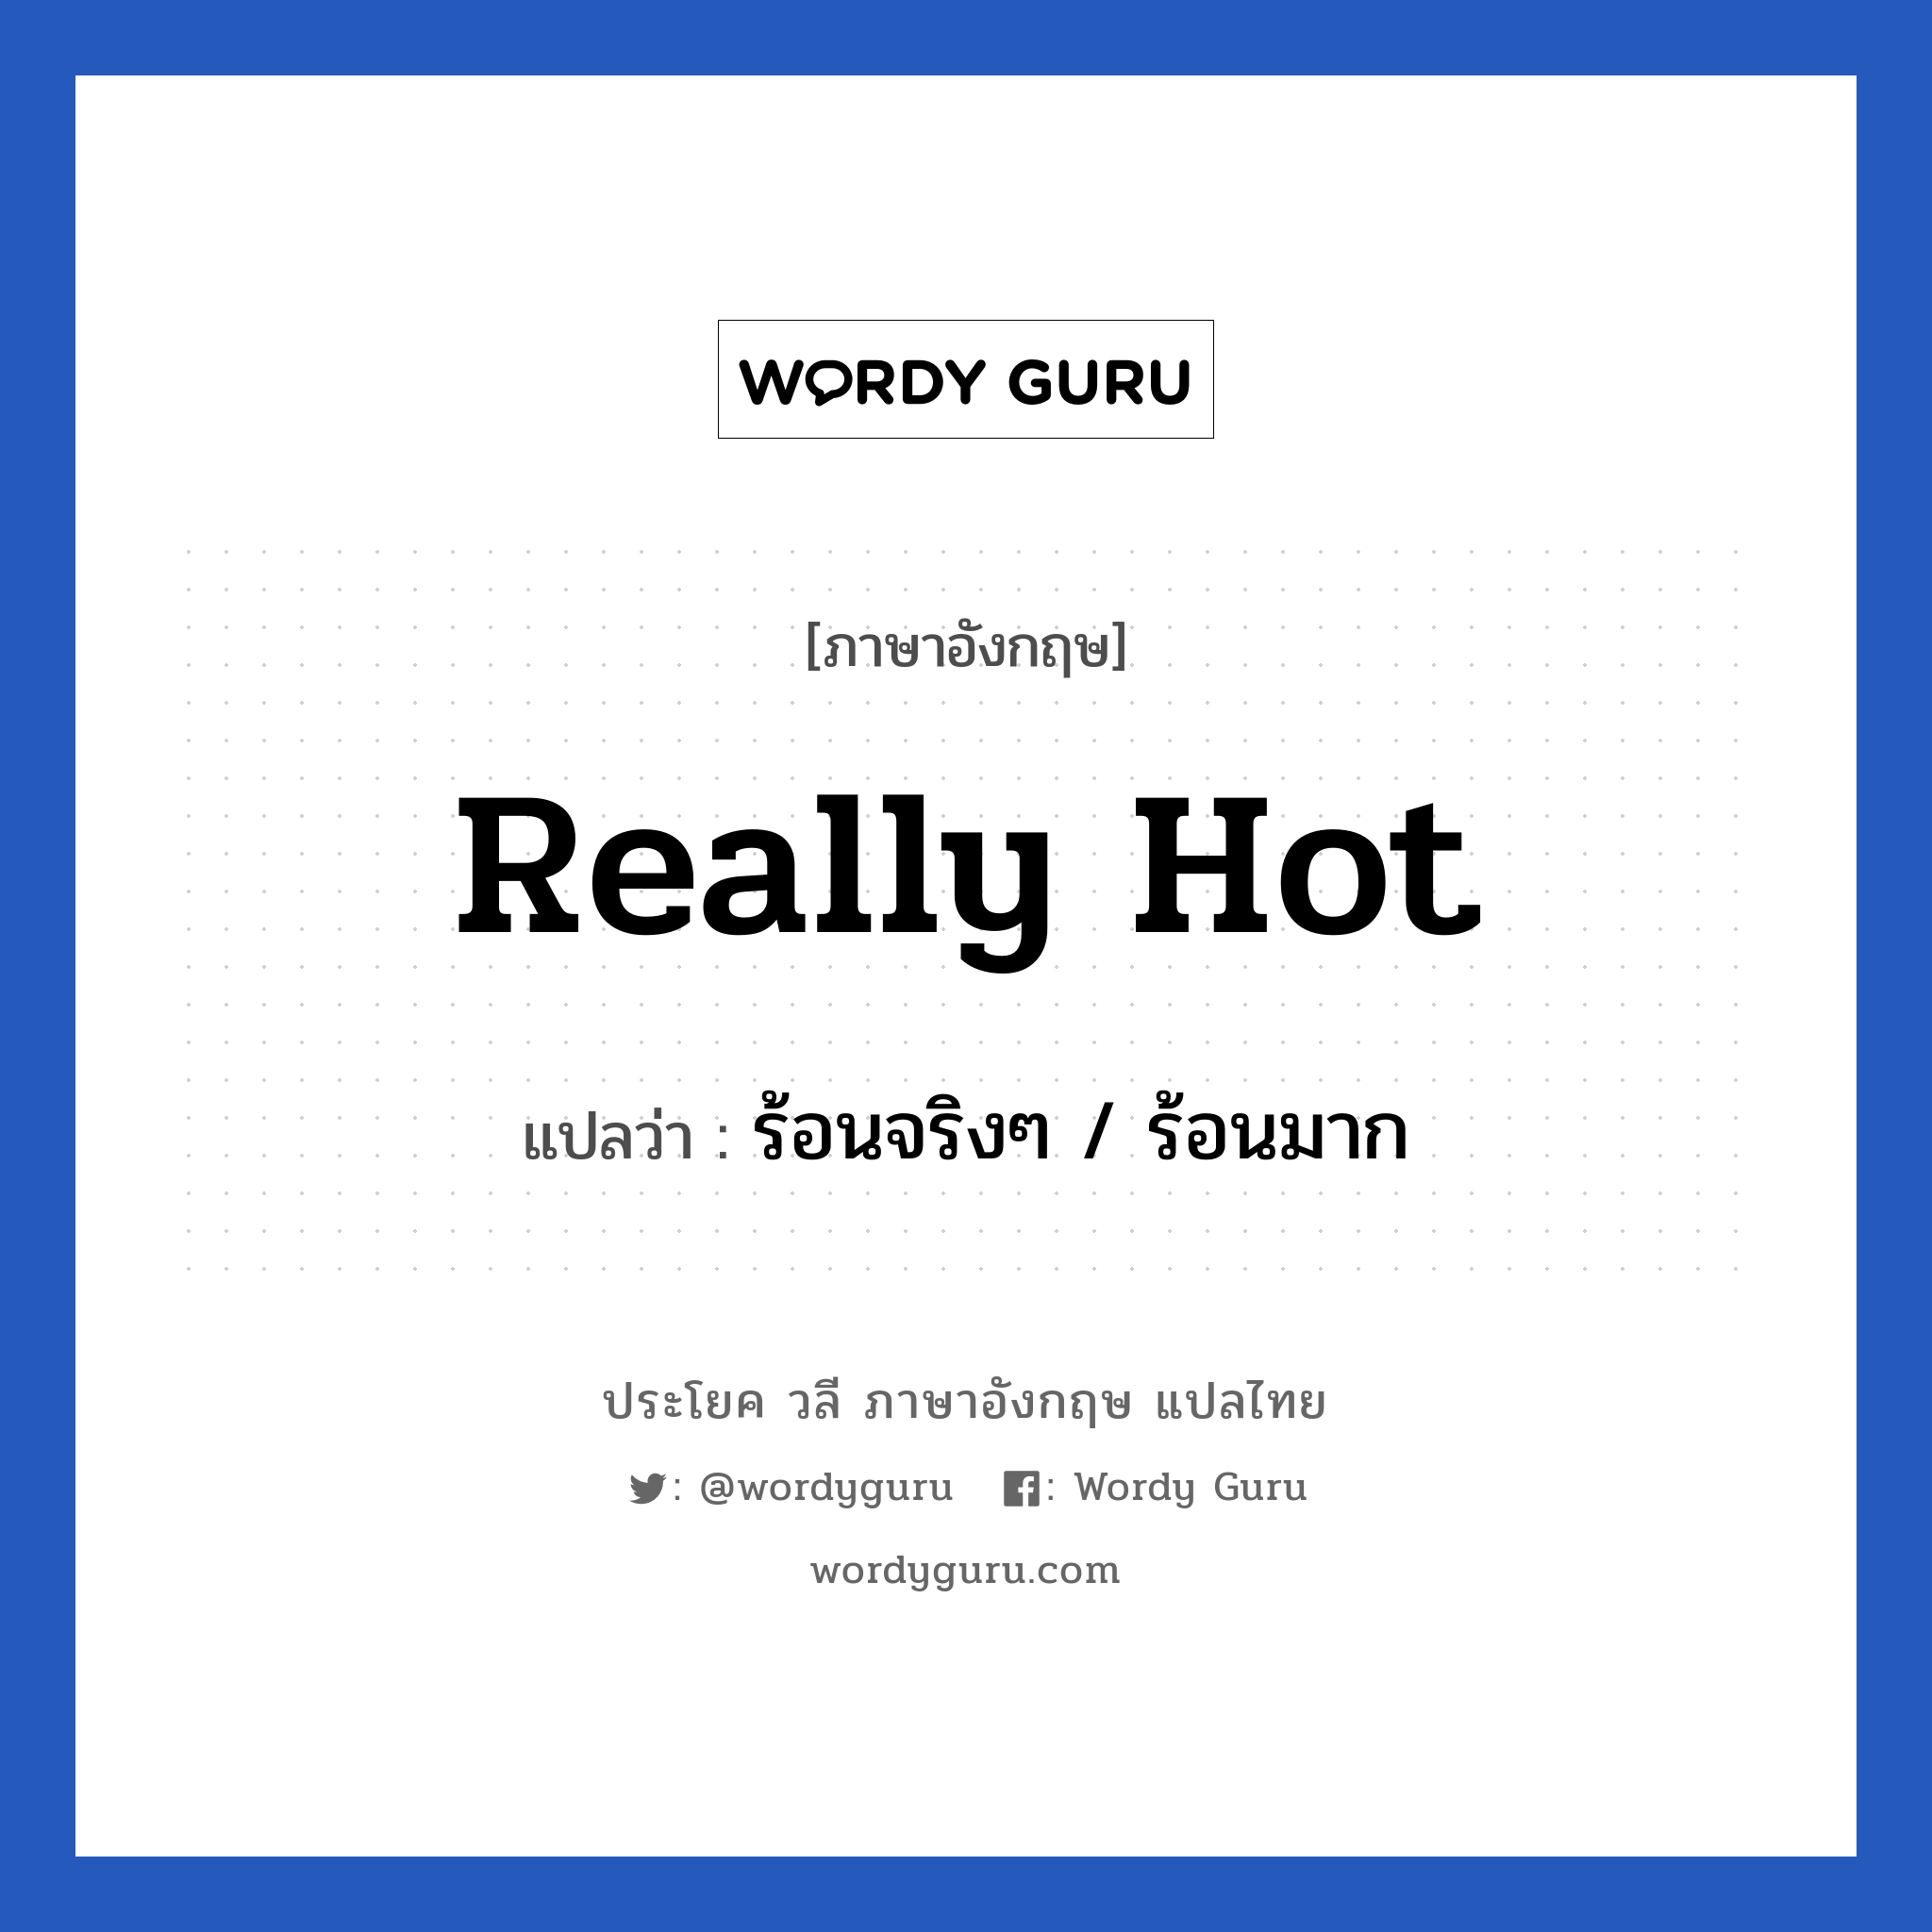 Really hot แปลว่า?, วลีภาษาอังกฤษ Really hot แปลว่า ร้อนจริงๆ / ร้อนมาก